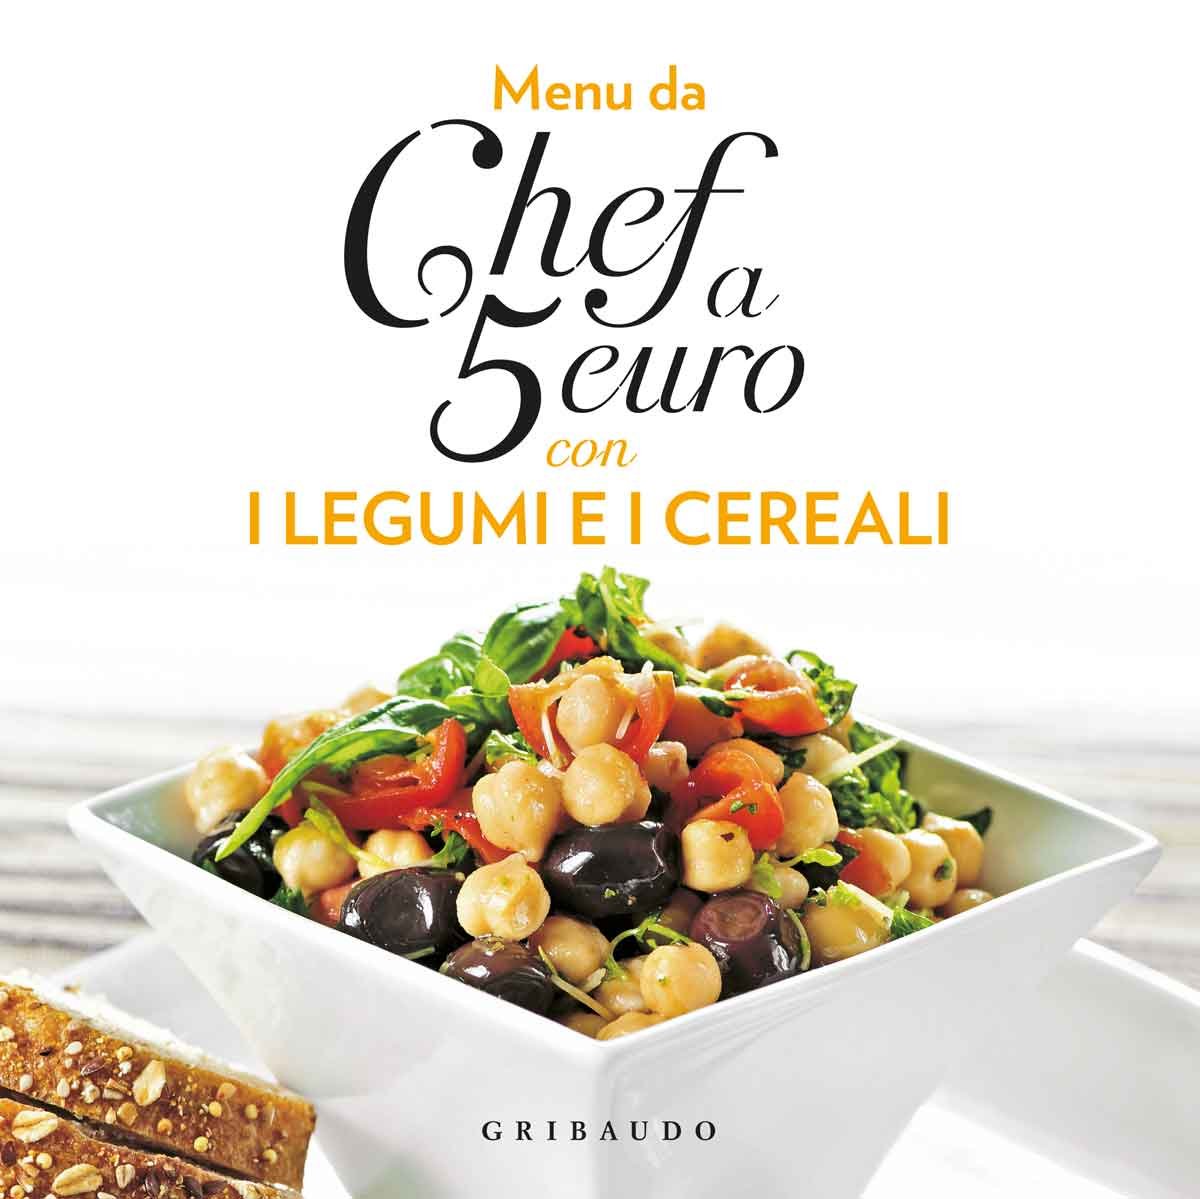 Menu da chef a 5 euro - Con i legumi e i cereali